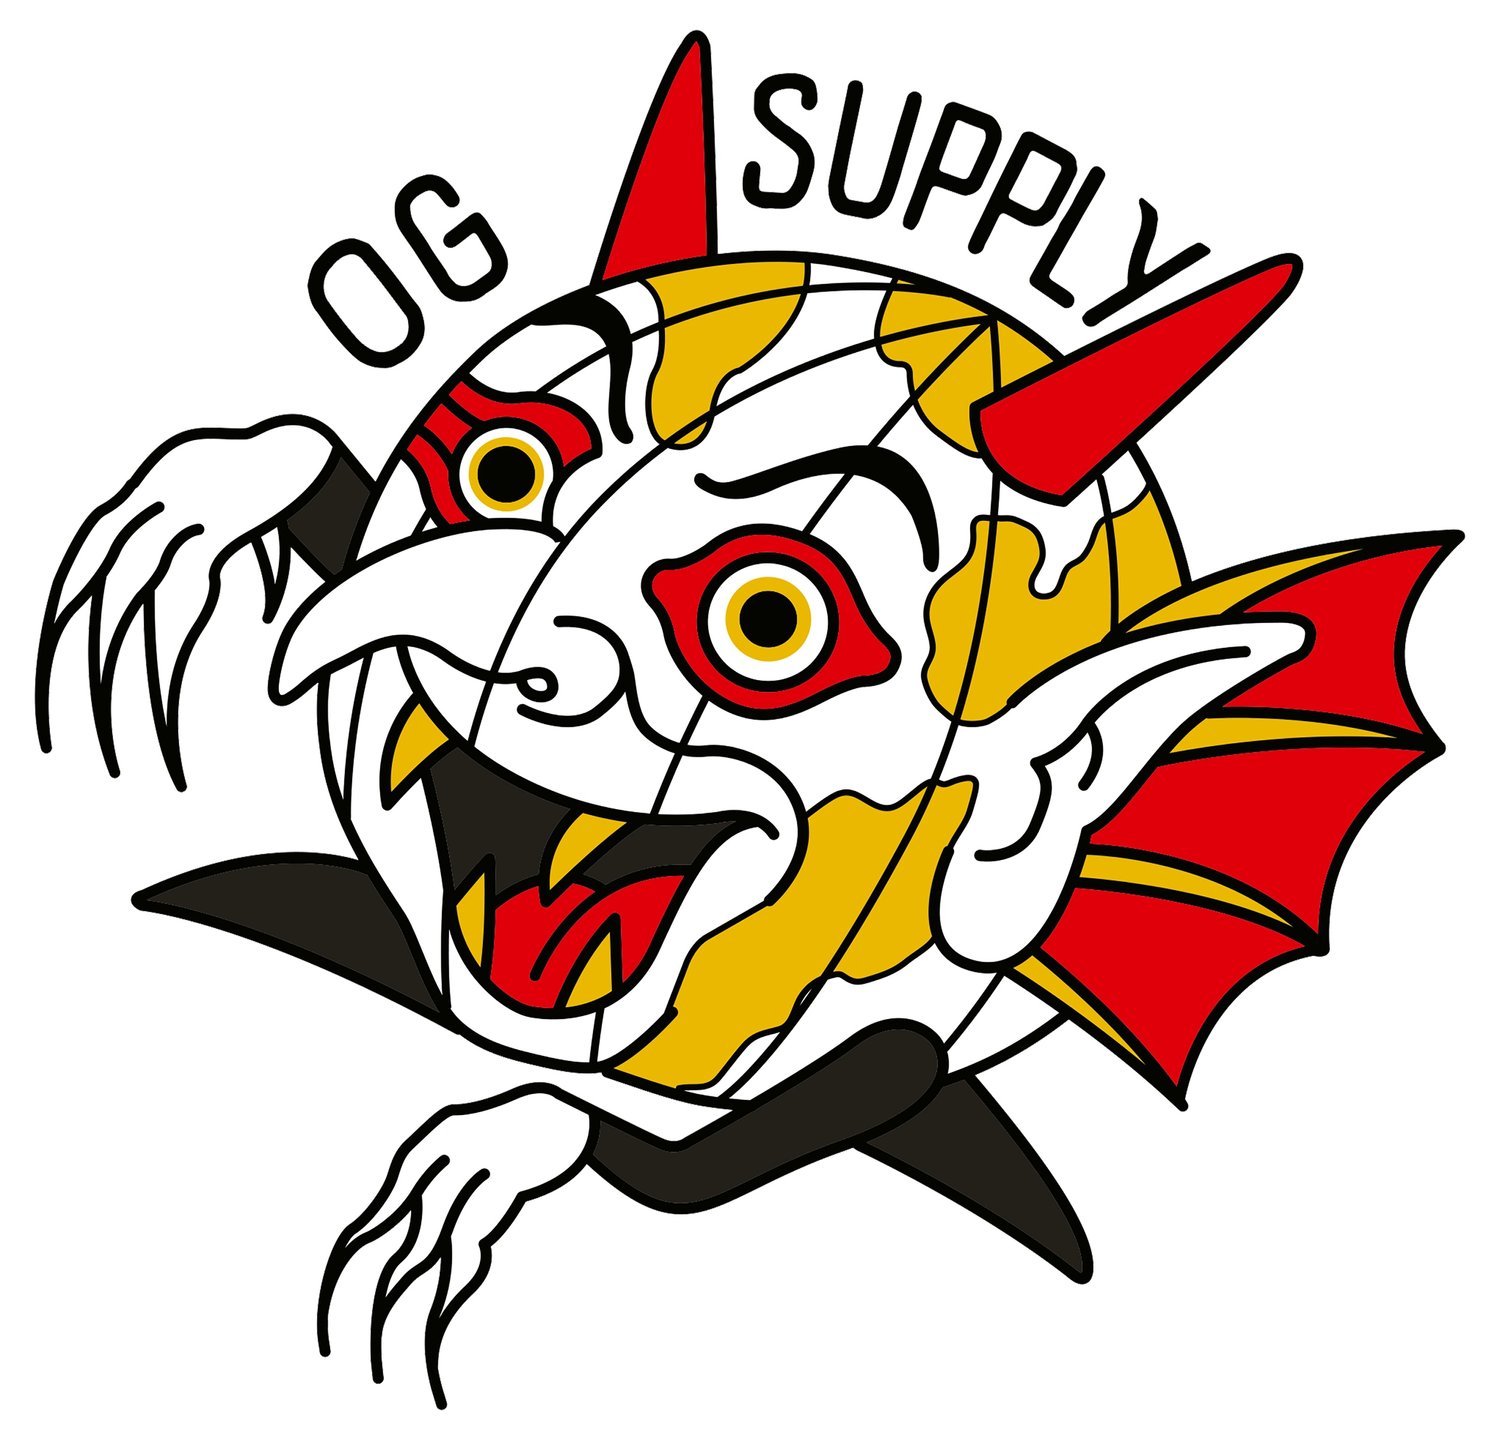 OG Supply